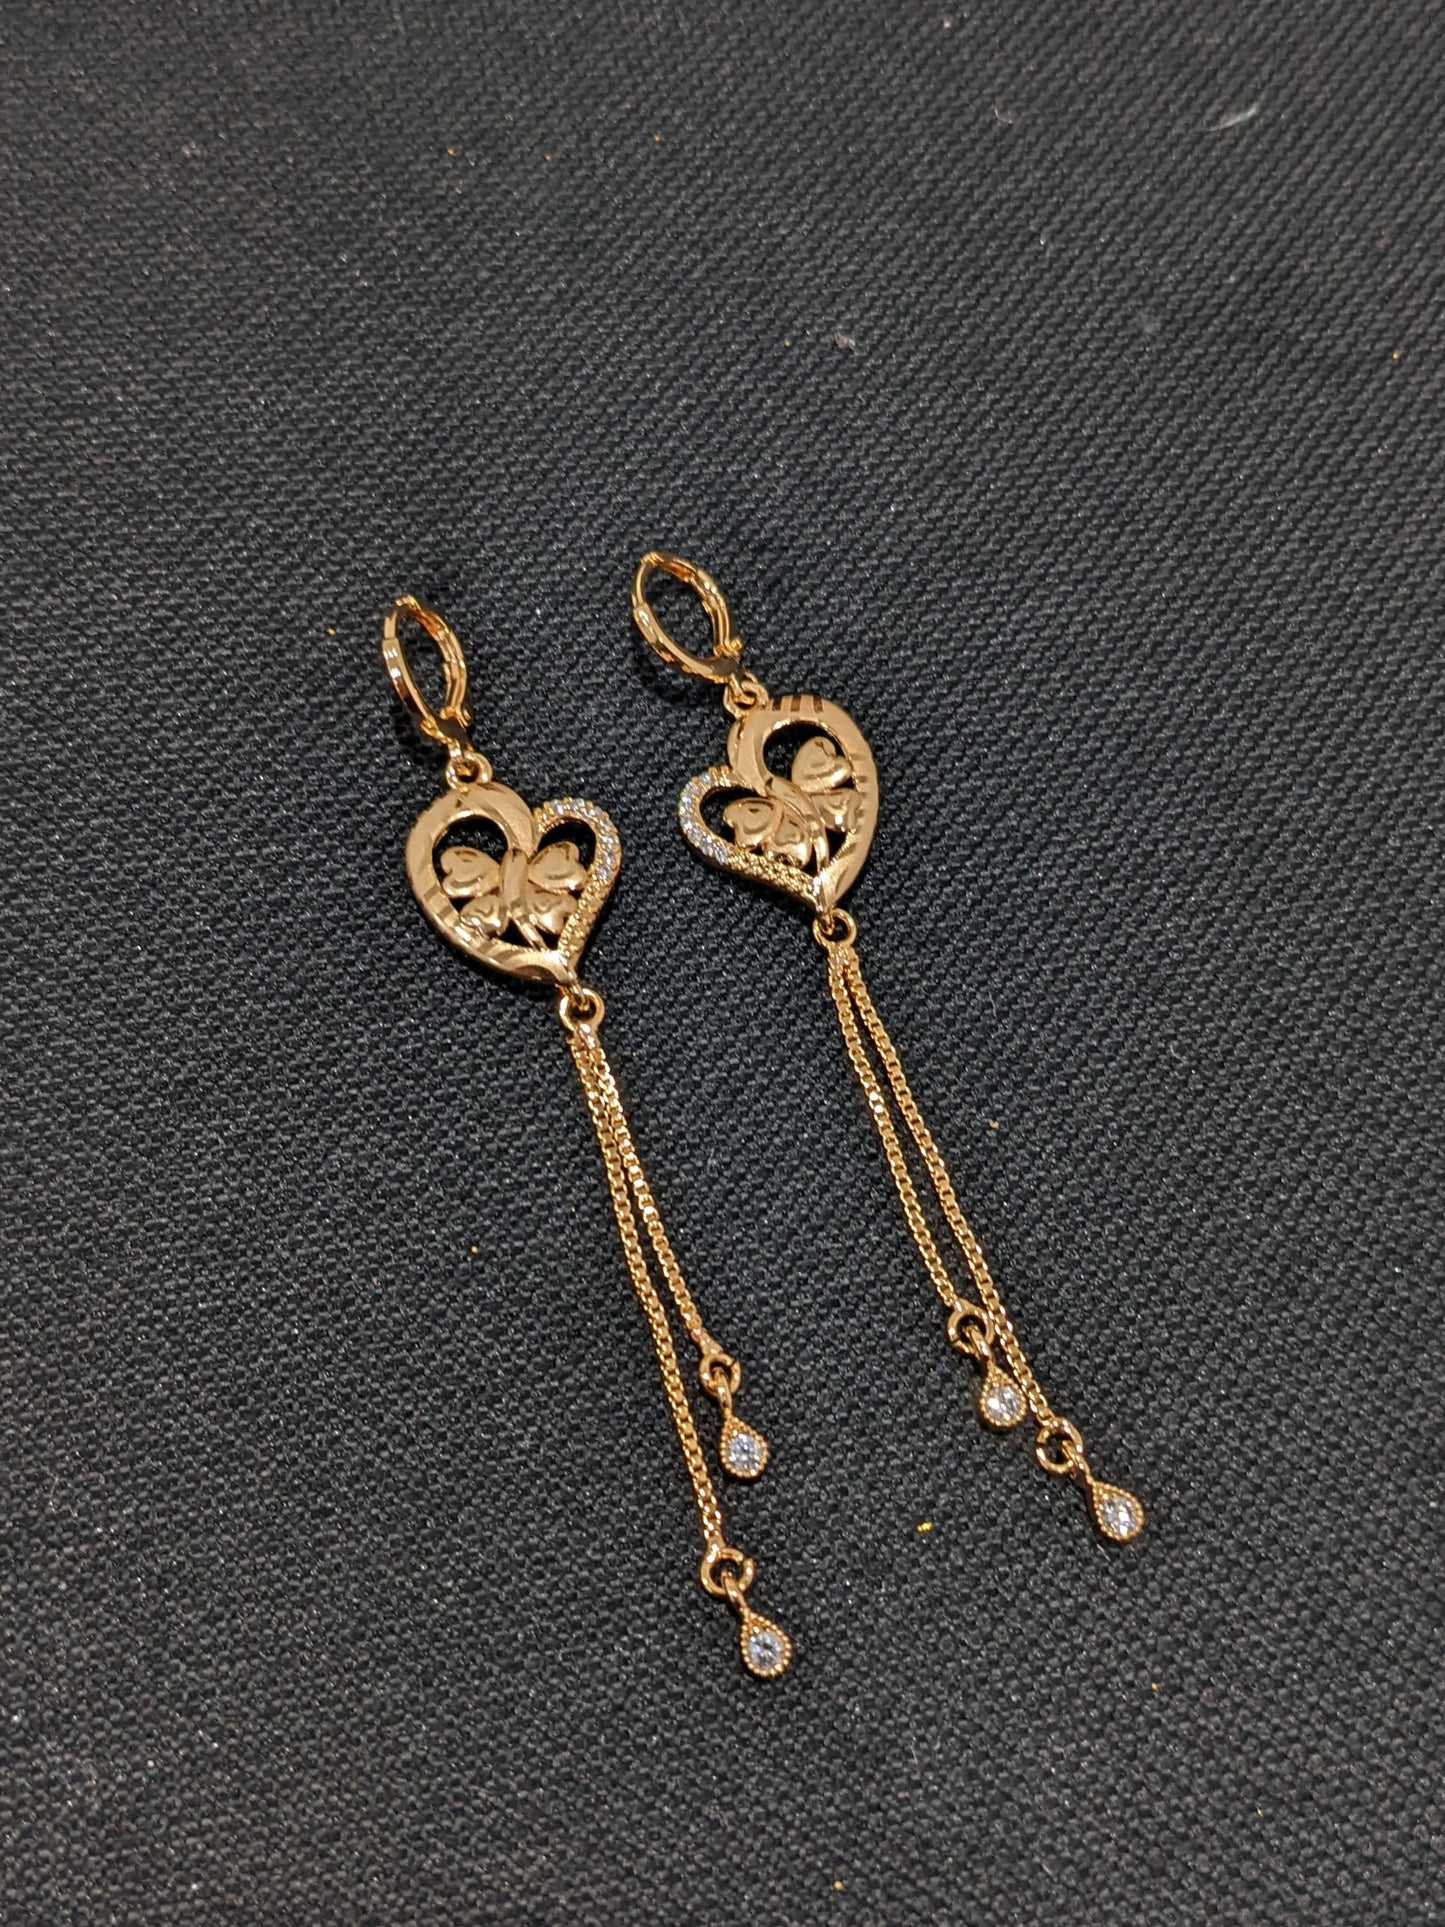 Butterfly Heart design ring style long dangle CZ earrings